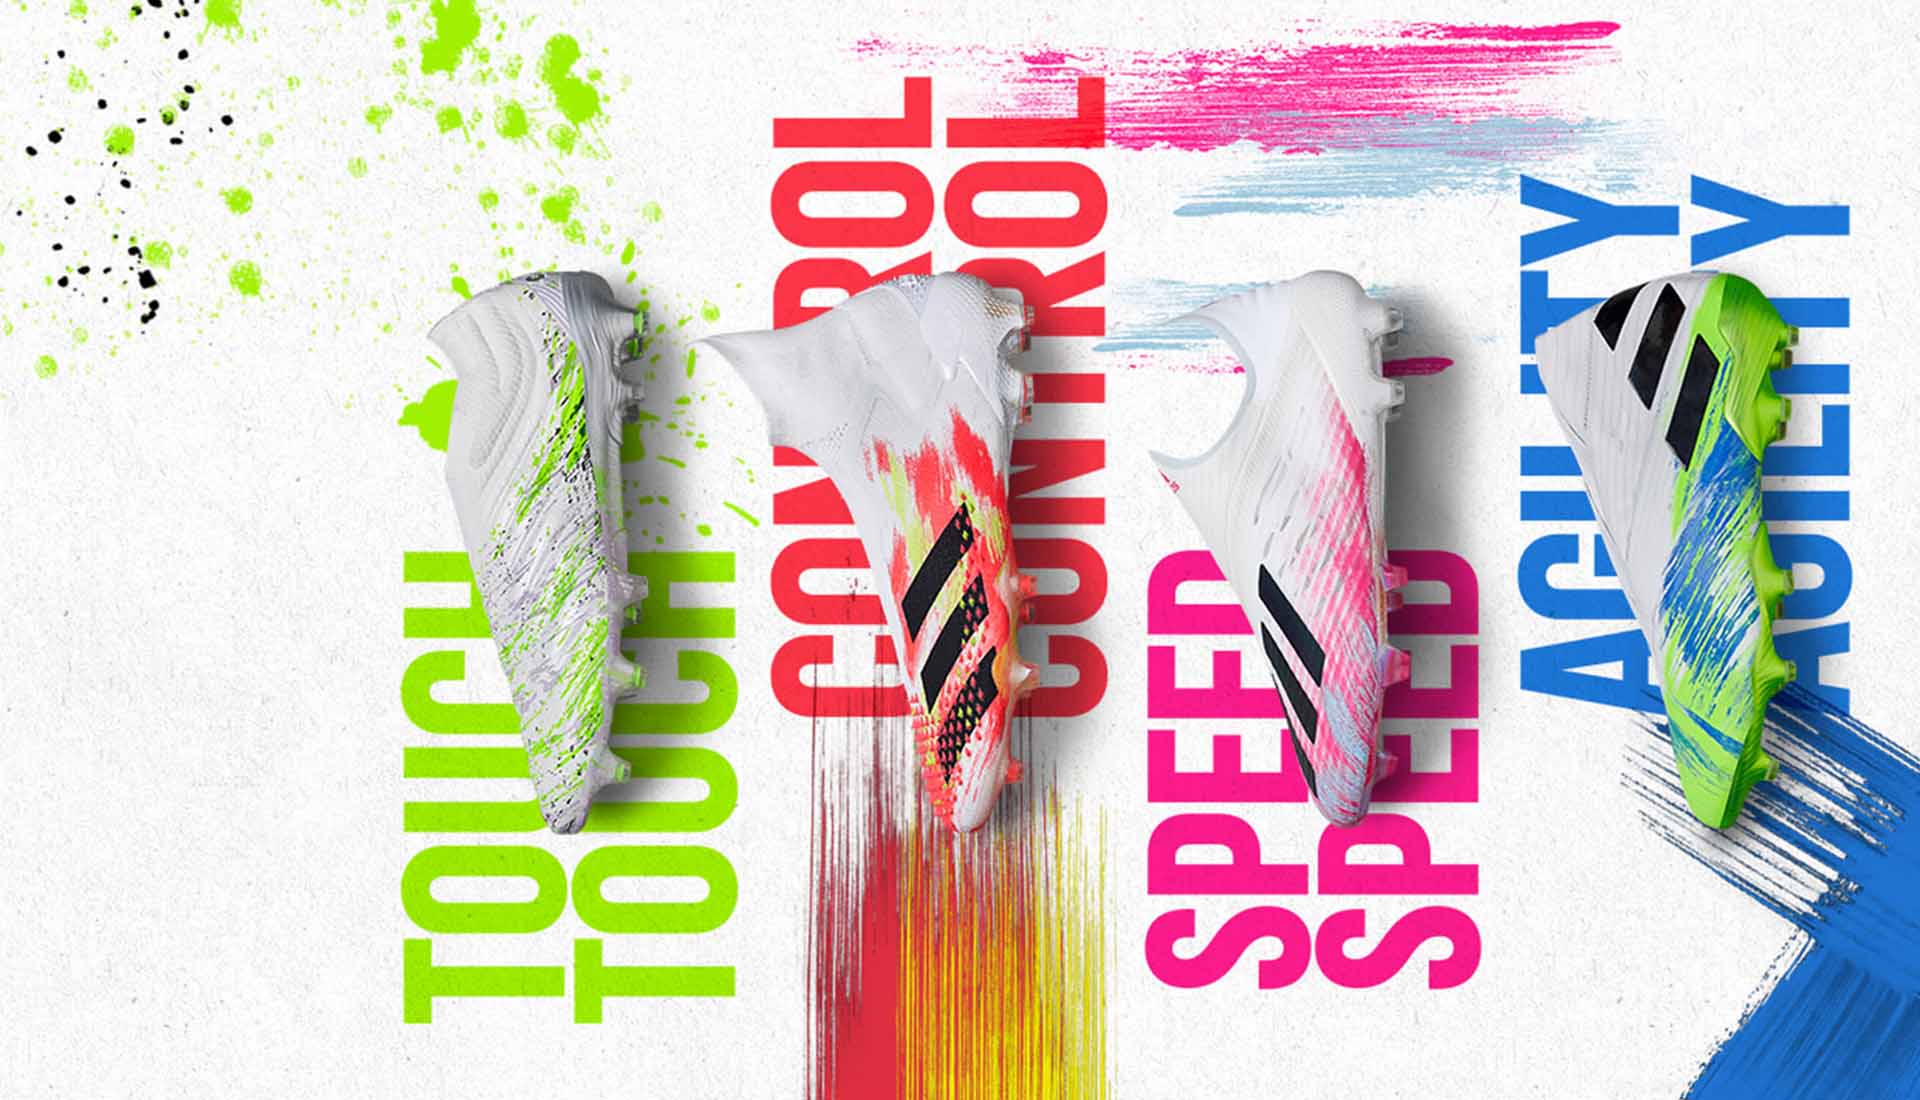 Adidas Uniforia xuất hiện lung linh như một tác phẩm hội họa